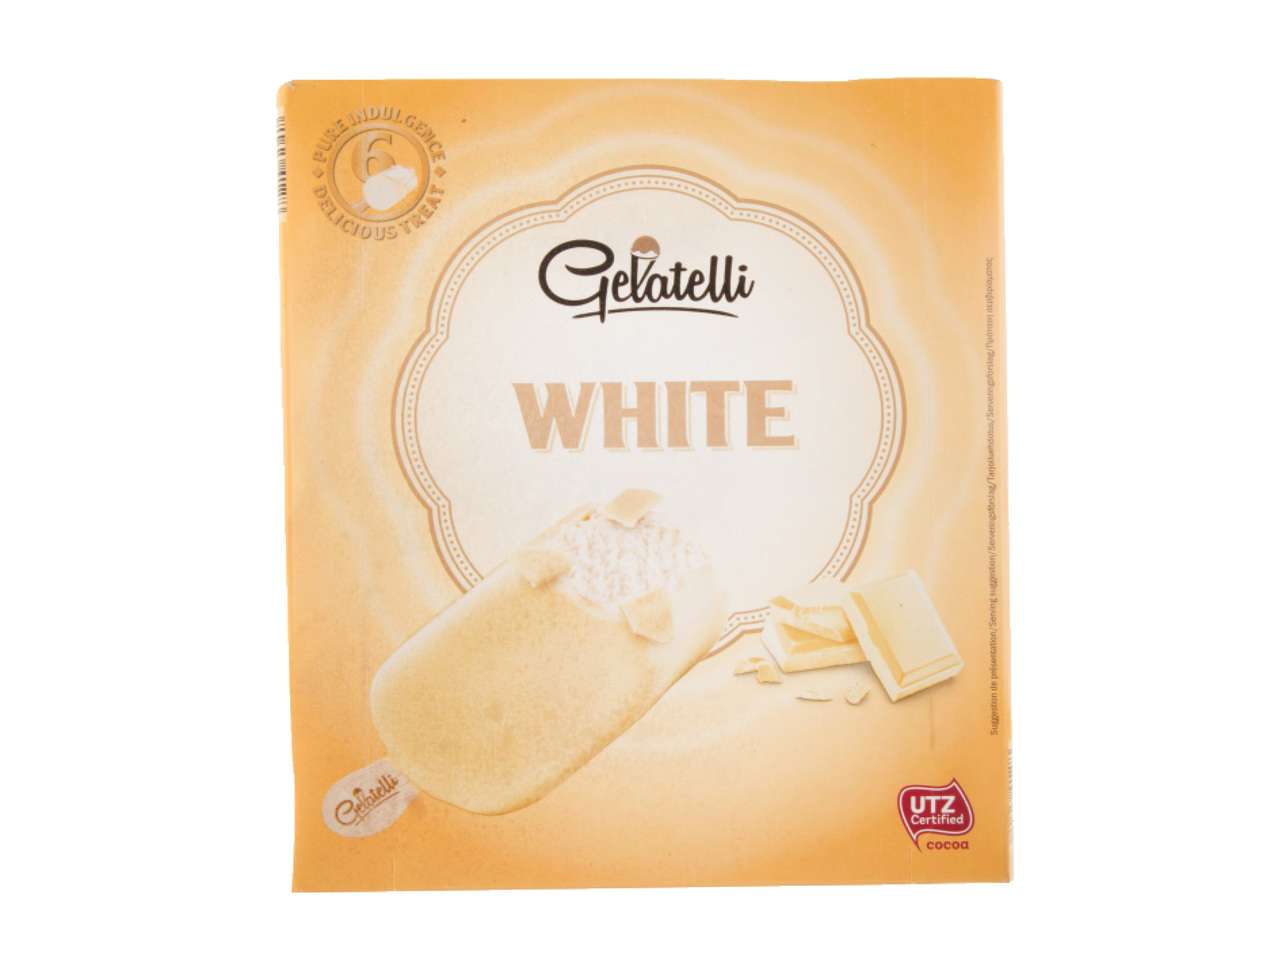 CLASSIC ICE WHITE CHOCOLATE